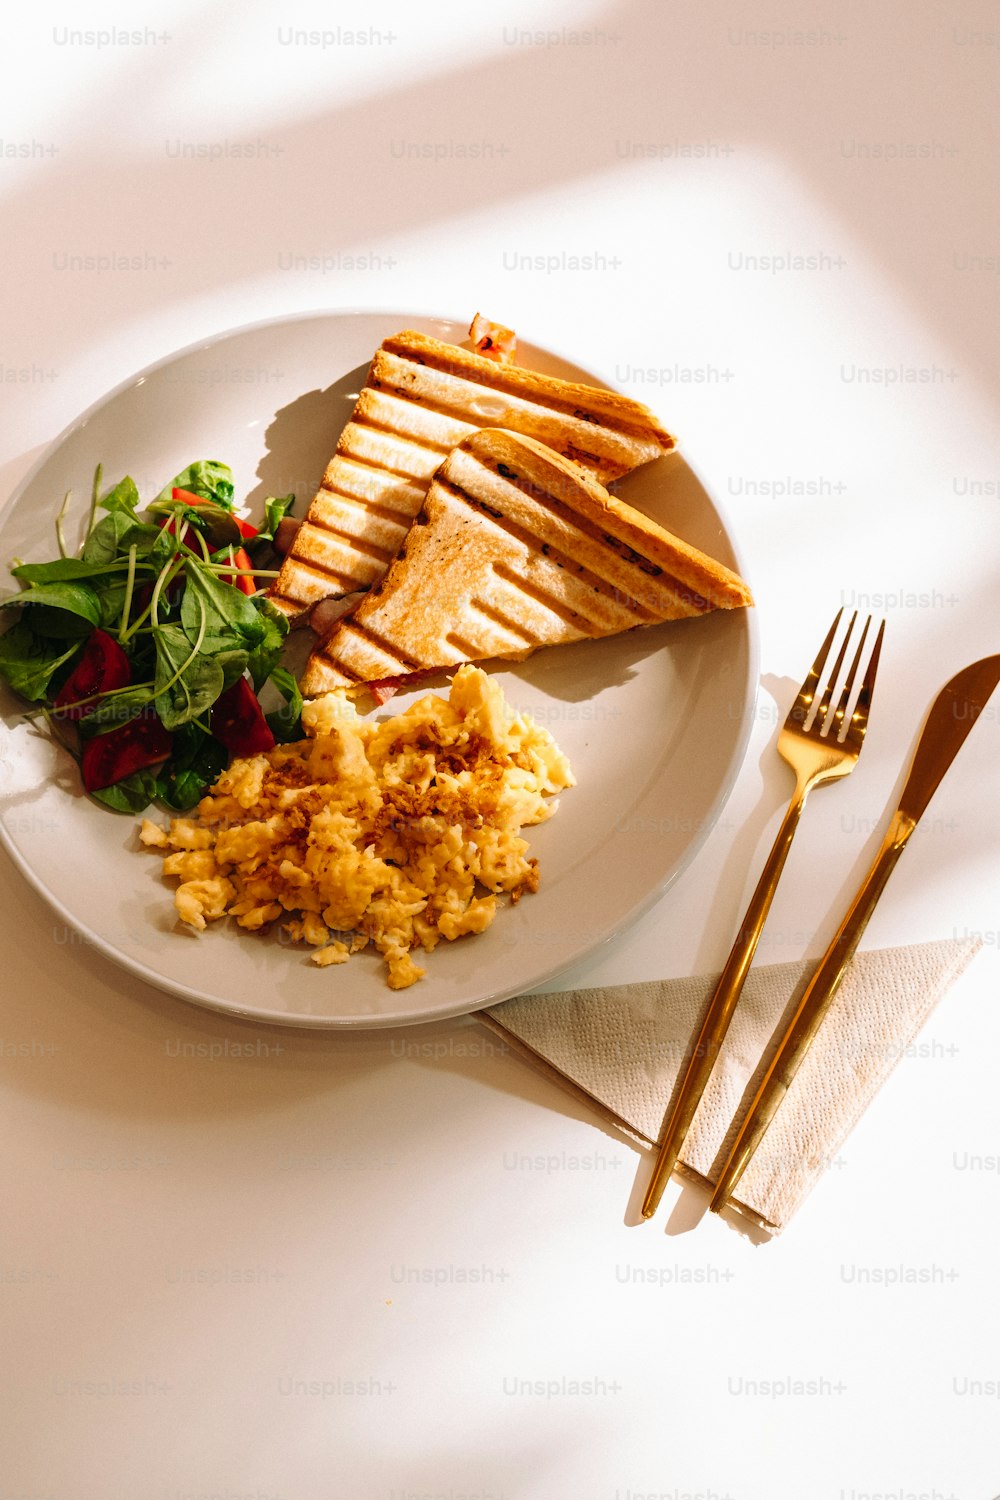 Un plato de comida en una mesa con un tenedor y un cuchillo